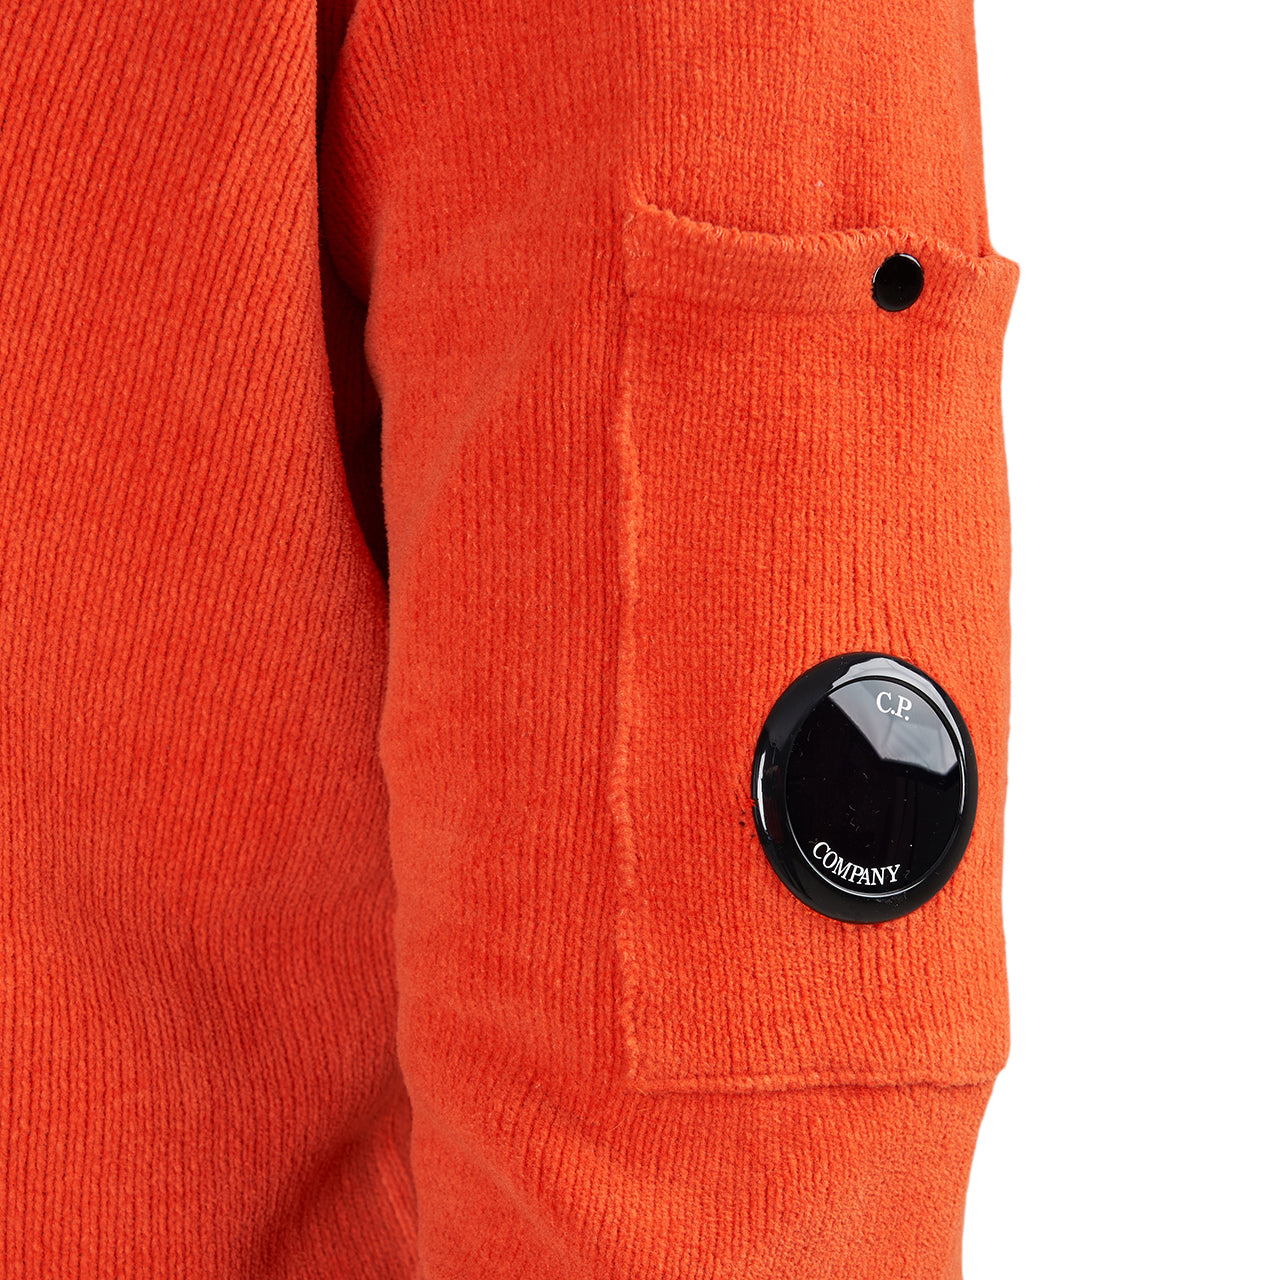 C.P. Company Chenille Cotton Crew Neck Knit (Orange)  - Allike Store